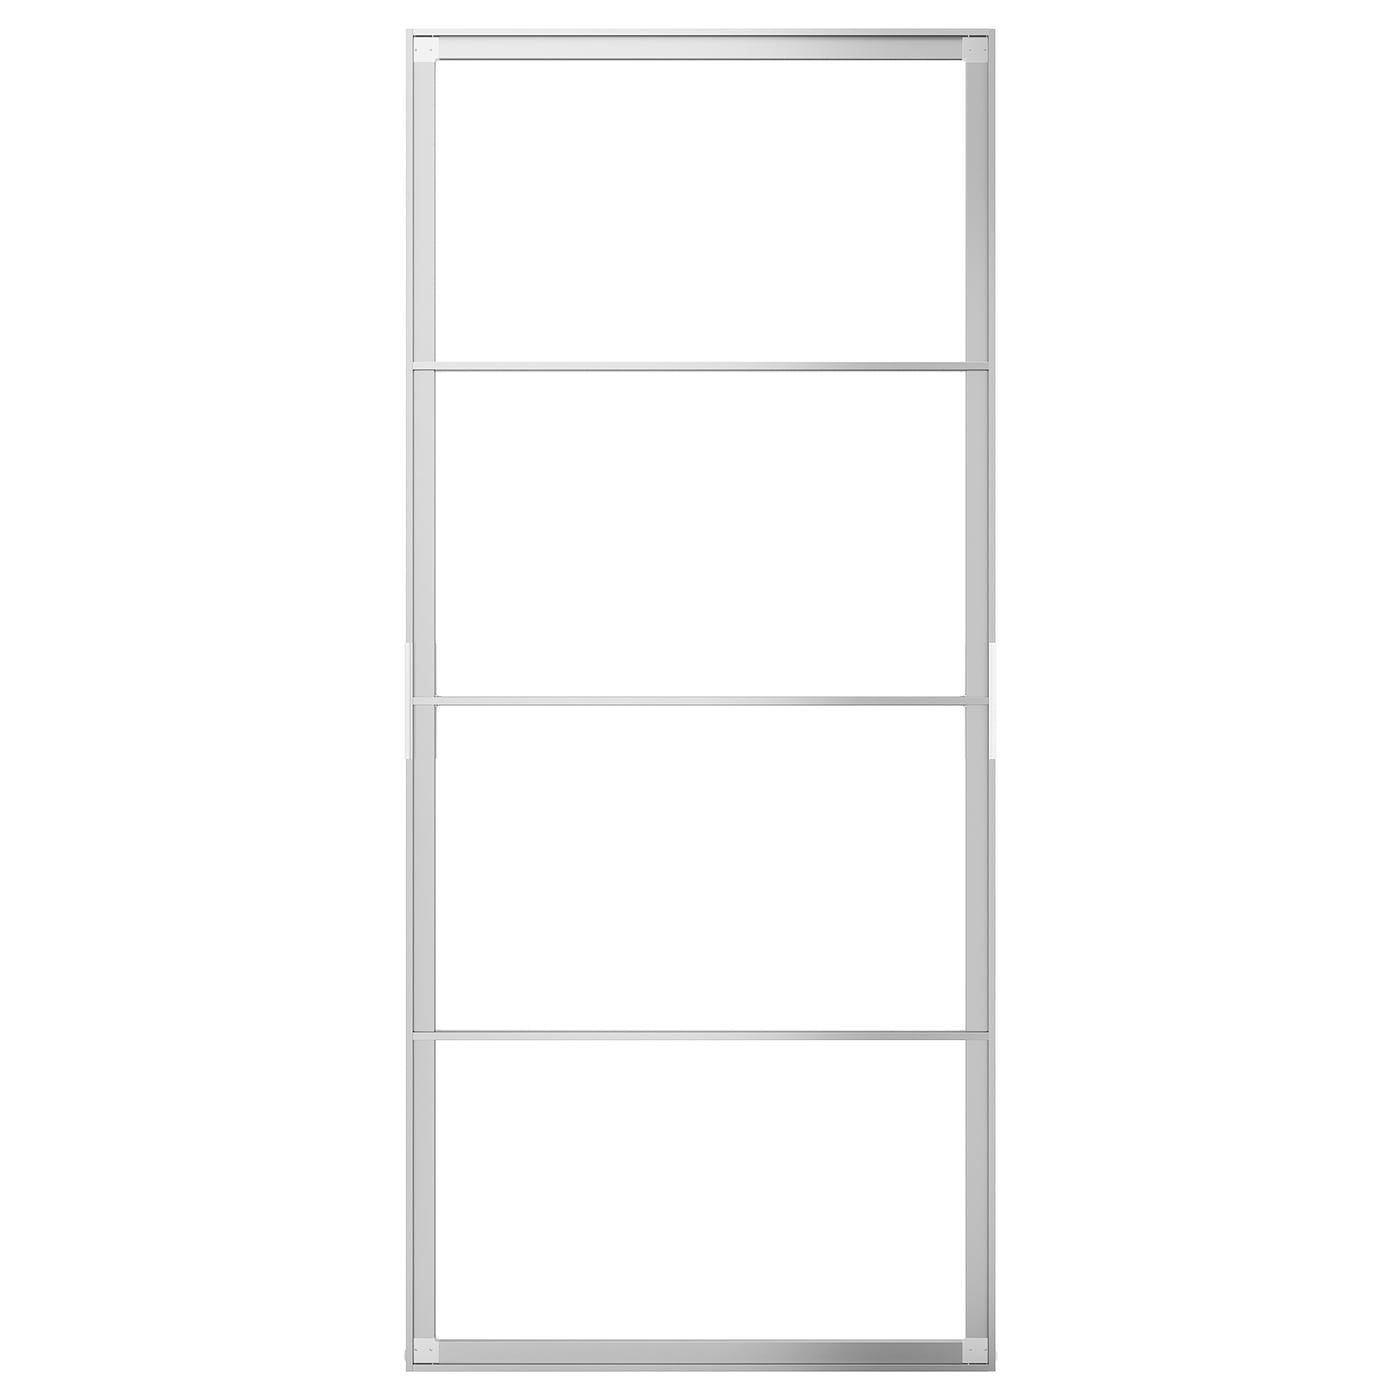 Пара рам раздвижных дверей - SKYTTA IKEA/ СКЮТТА ИКЕА, 102х231 см, серебрянный